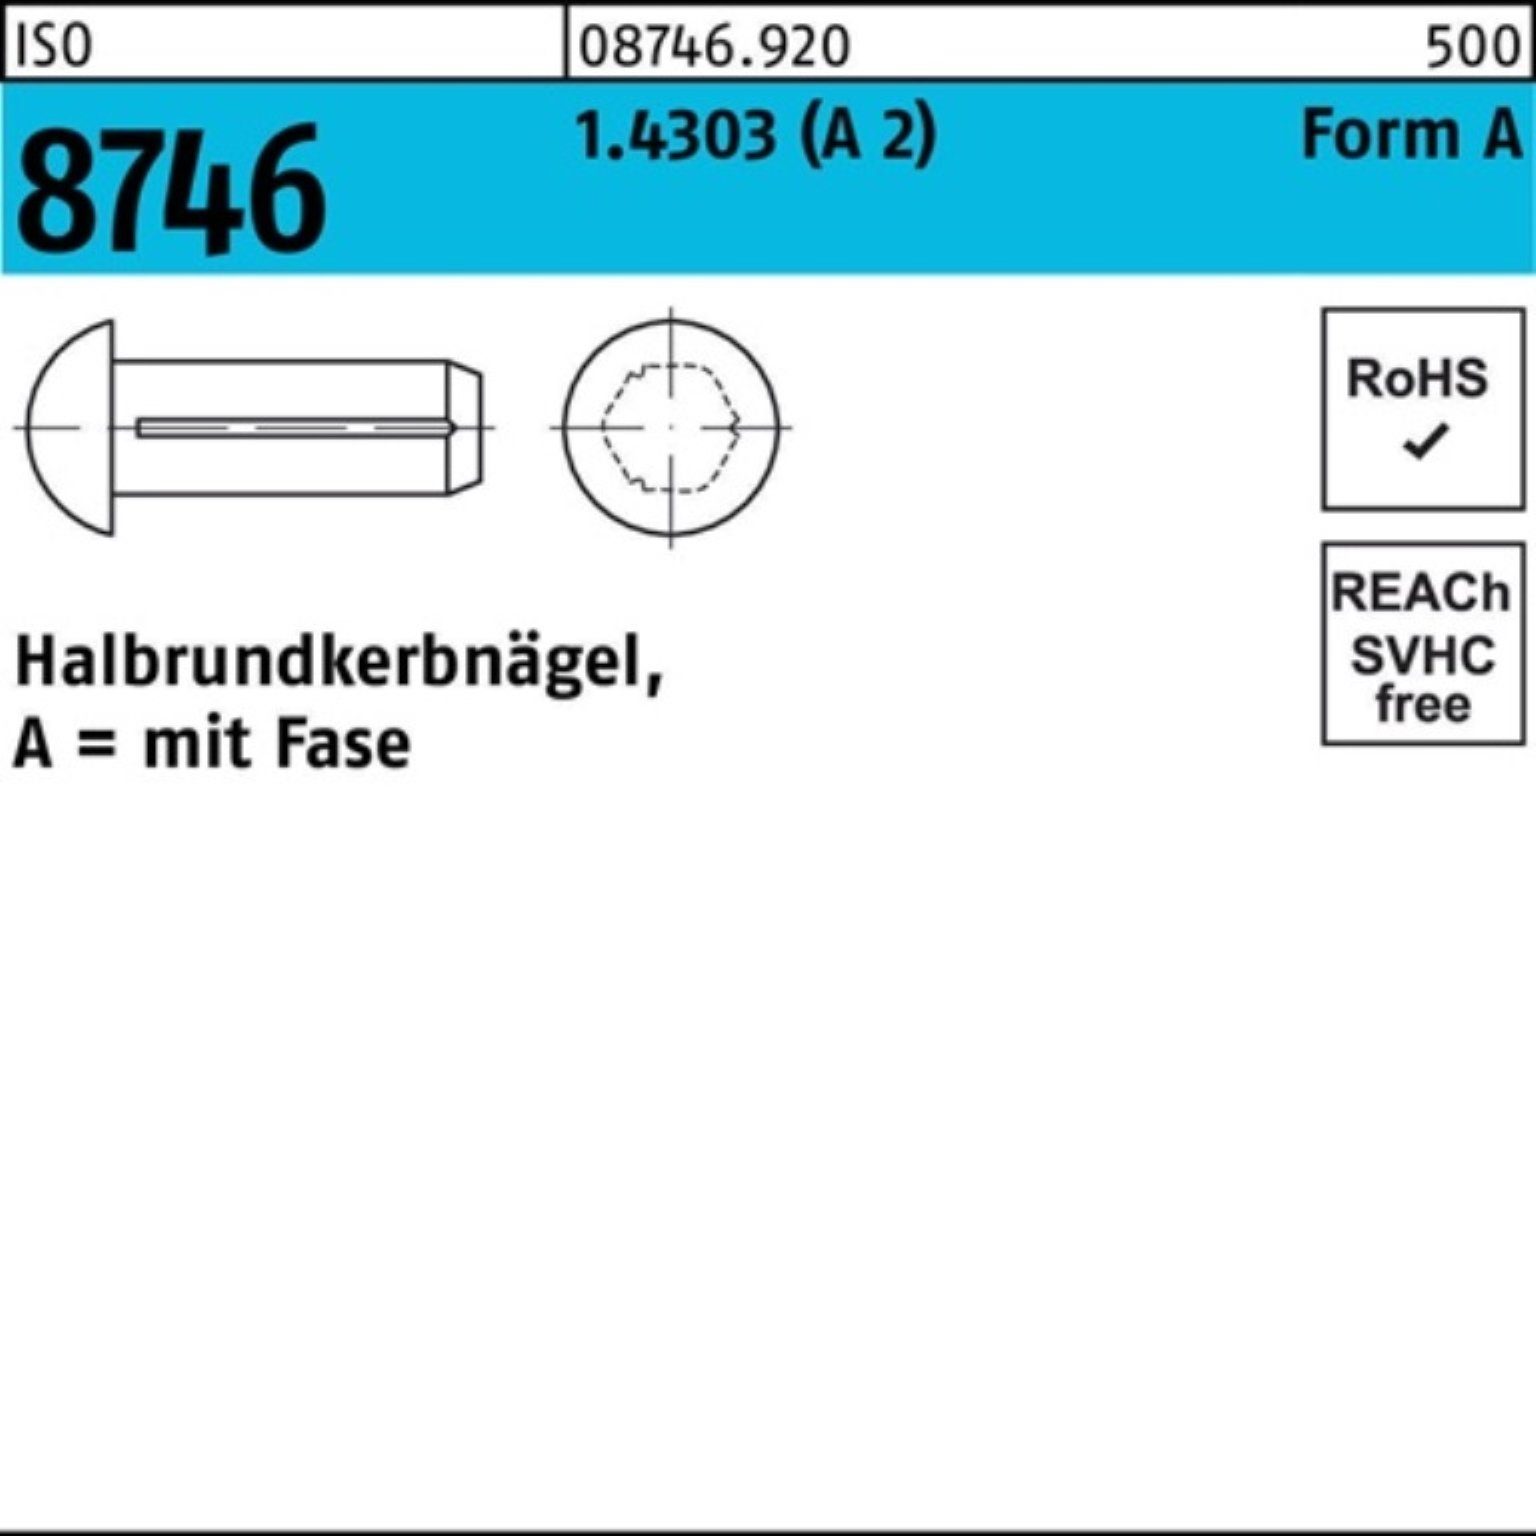 3x 6 (A Nagel Pack Fase 100 2) Reyher ISO 1.4303 Stüc 100er Halbrundkerbnagel 8746